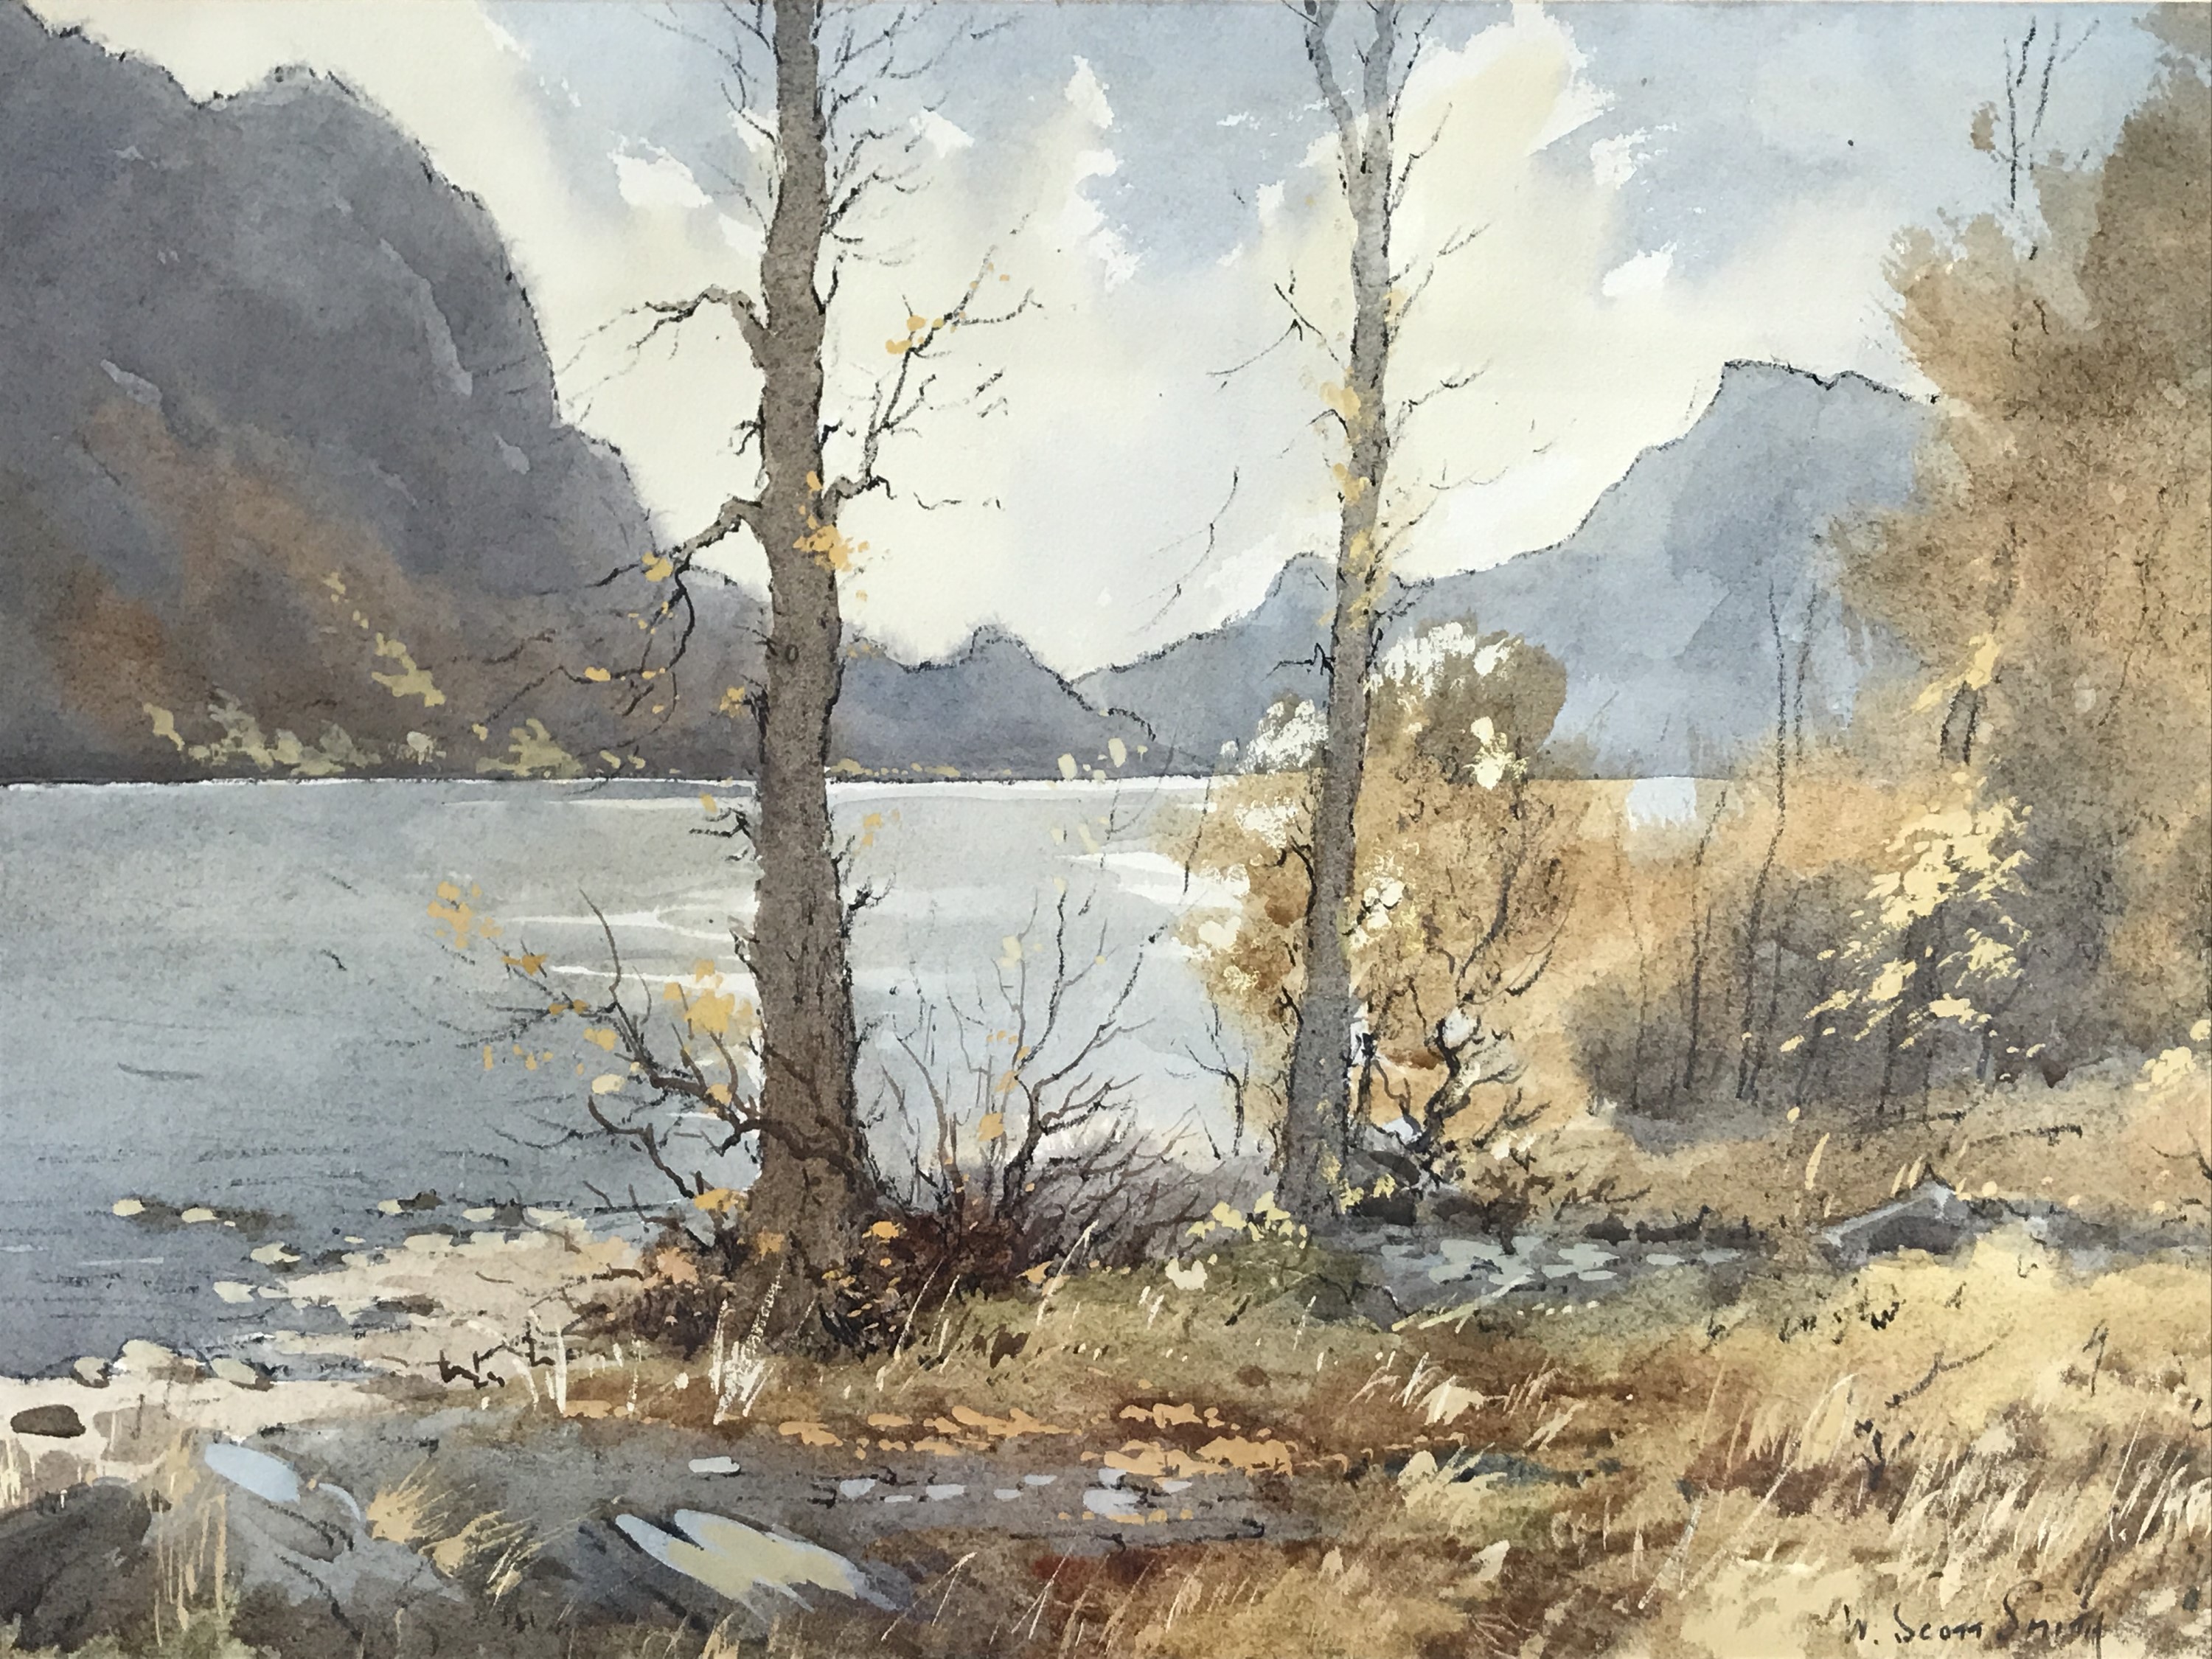 A watercolour lake scene by W. Scott Smith